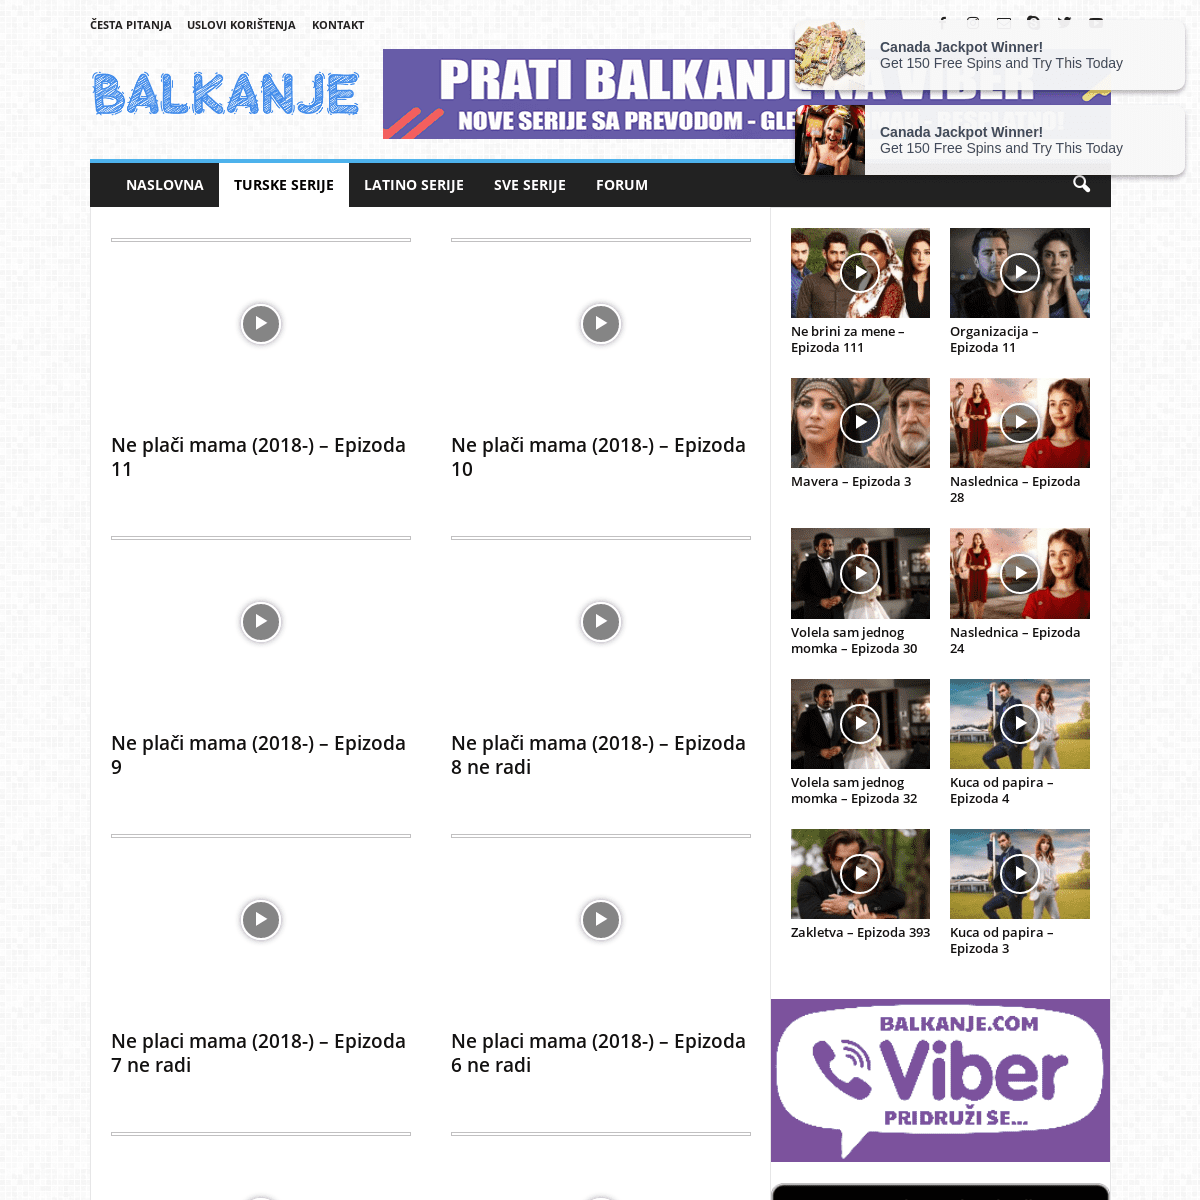 A complete backup of https://balkanje.com/turske-serije/ne-placi-mama-2018/